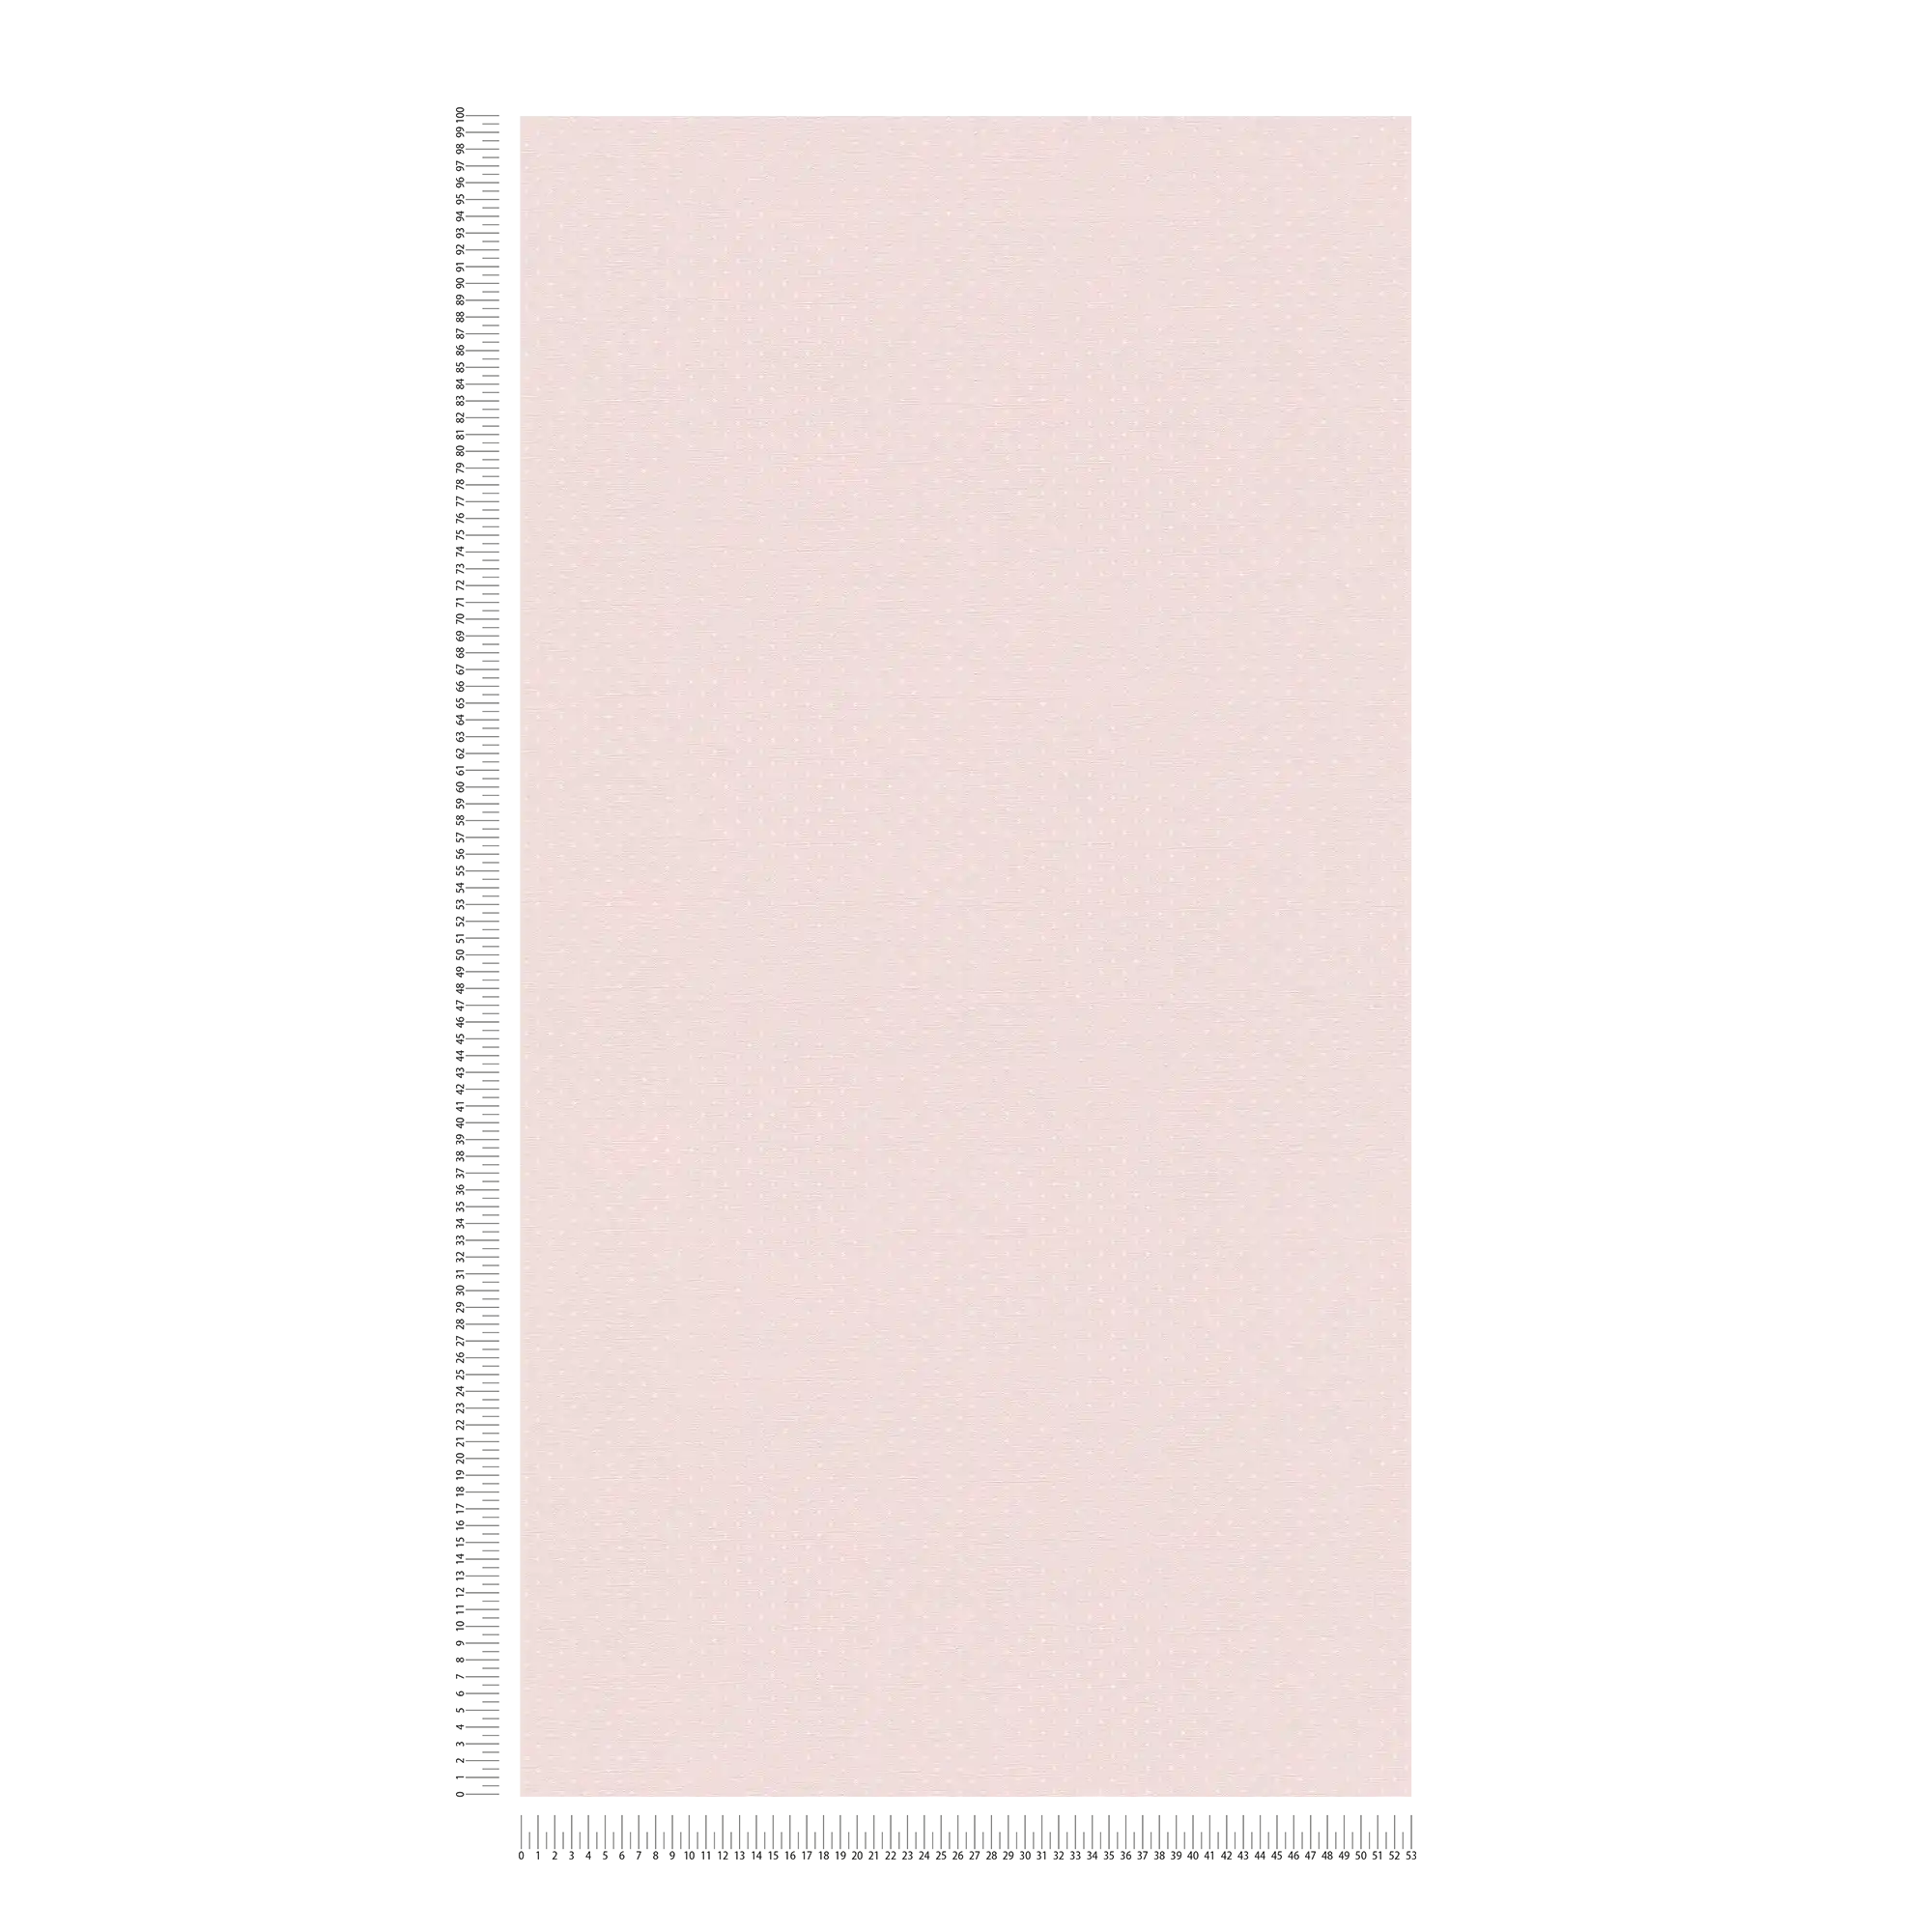             Papier peint style campagne à petits pois - rose, blanc
        